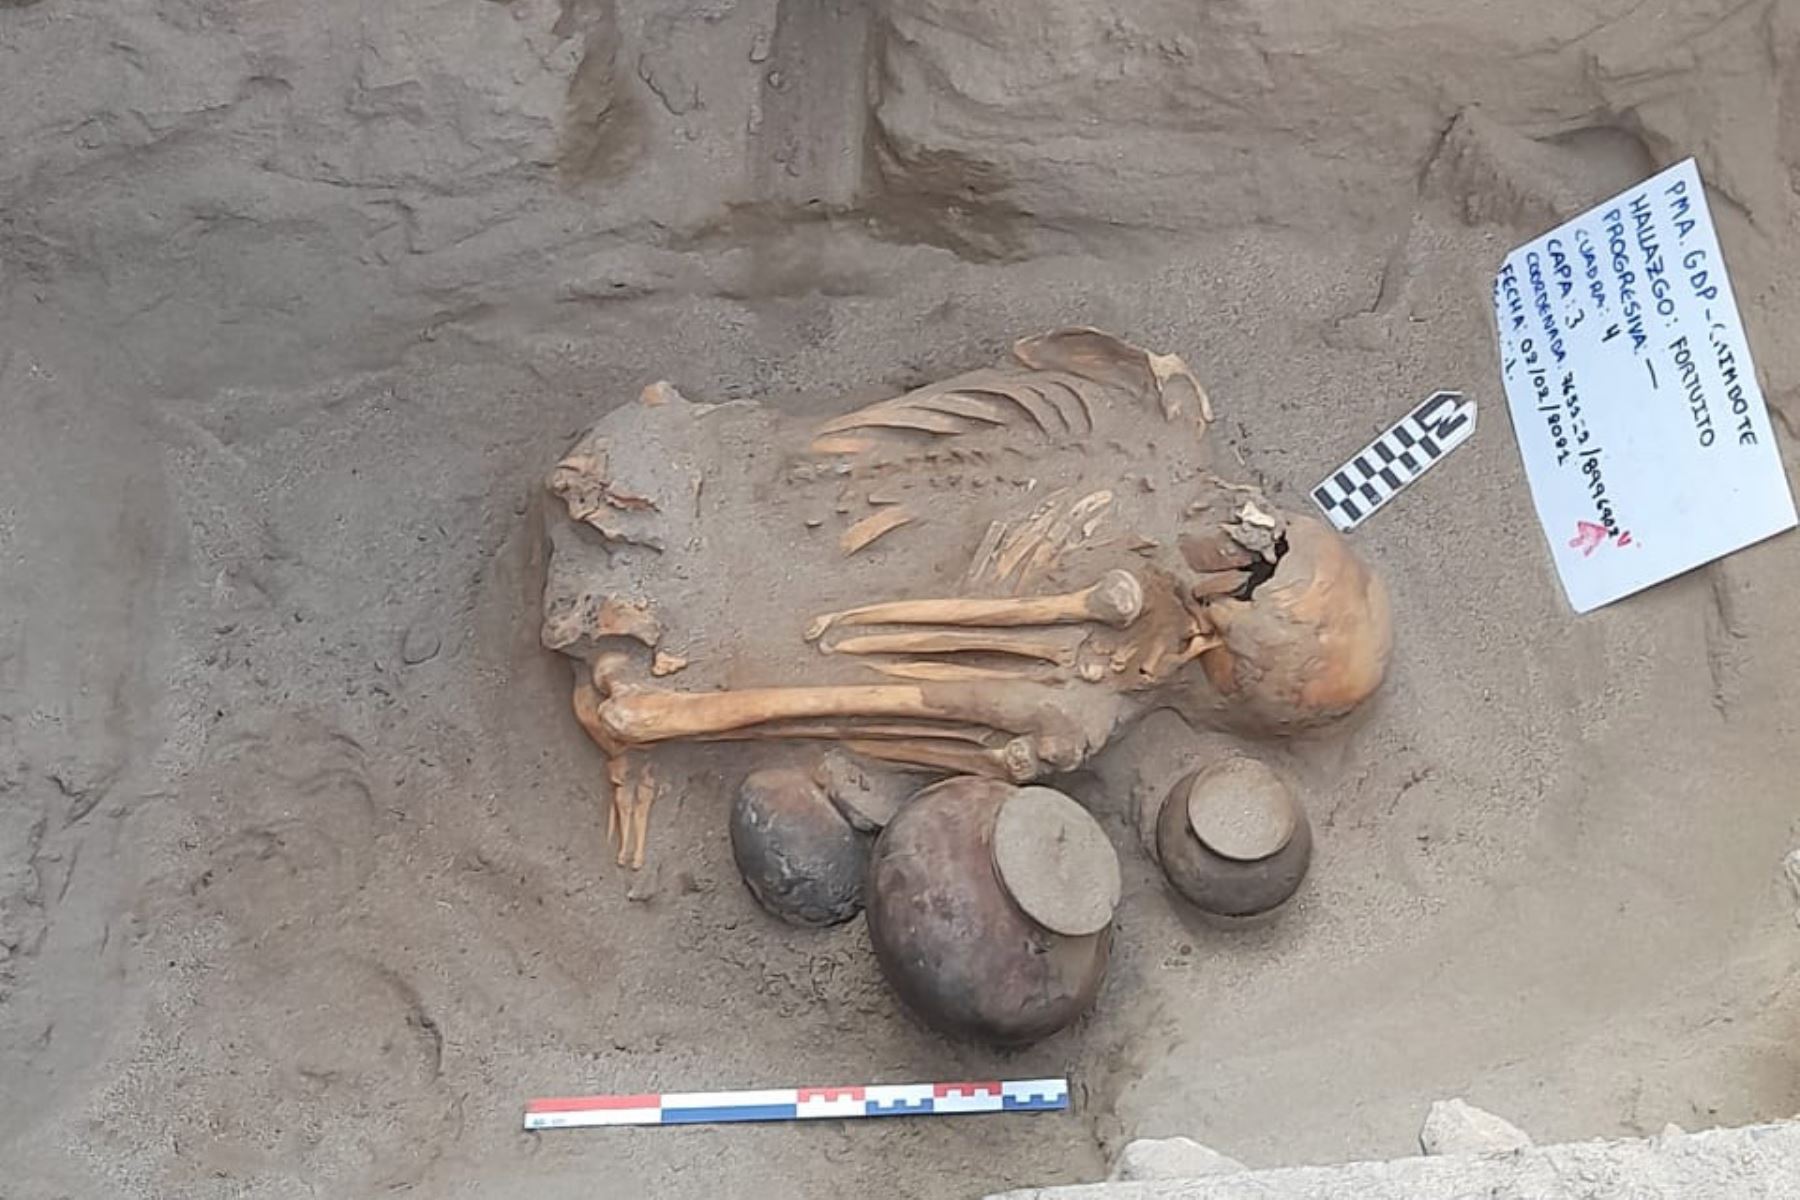 En el pueblo joven Bolívar, en Chimbote, fueron hallados los restos óseos de un personaje en posición cúbito ventral flexionado, asociado a tres vasijas.